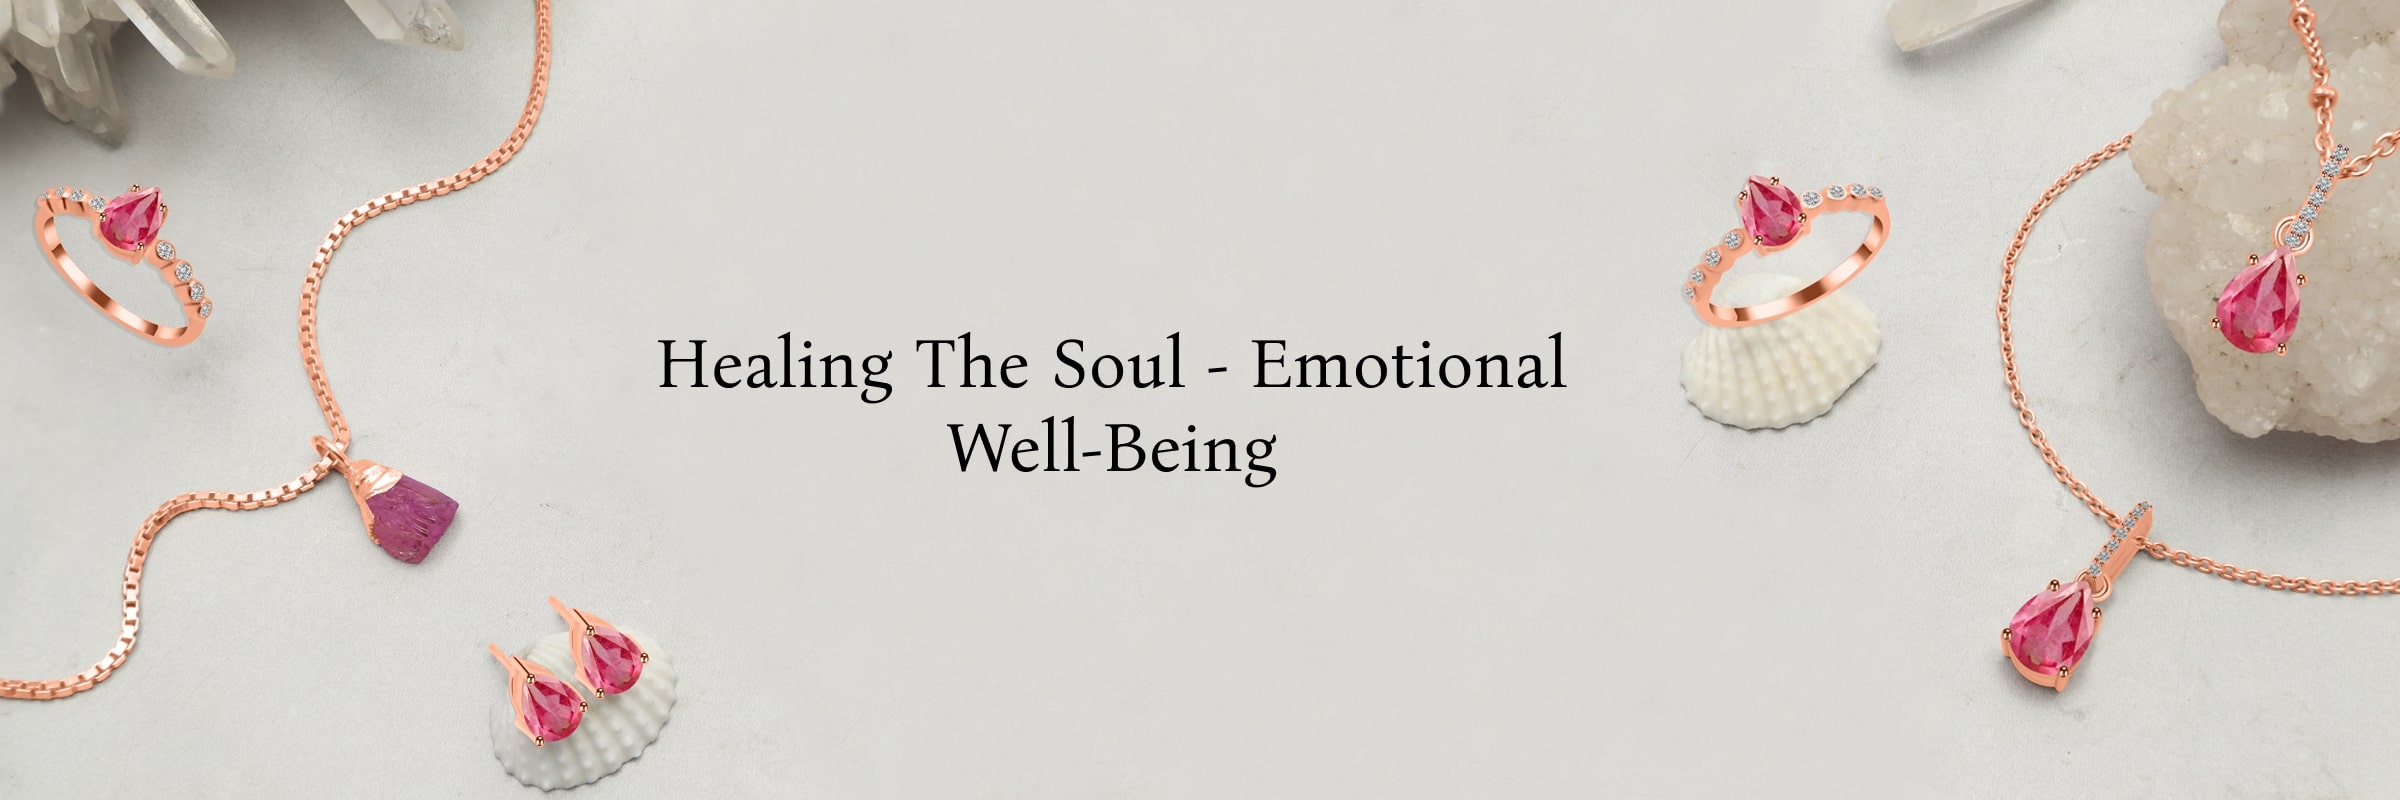 Mental & Emotional Healing